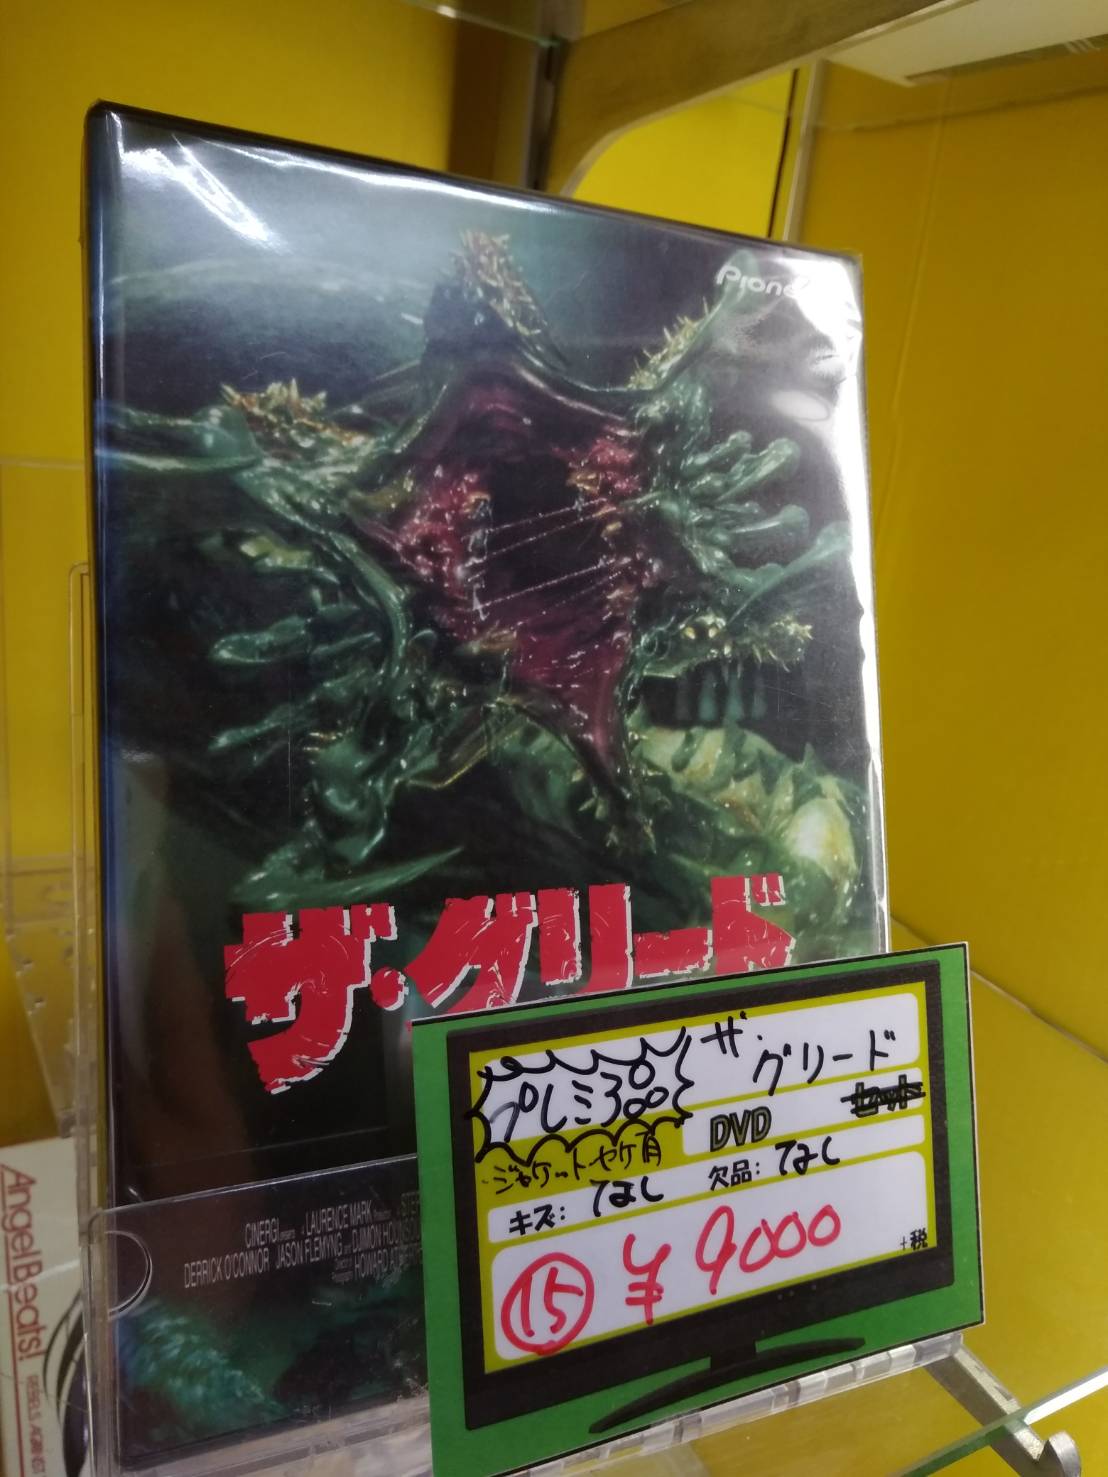 ザ・グリード　DVDCDDVD